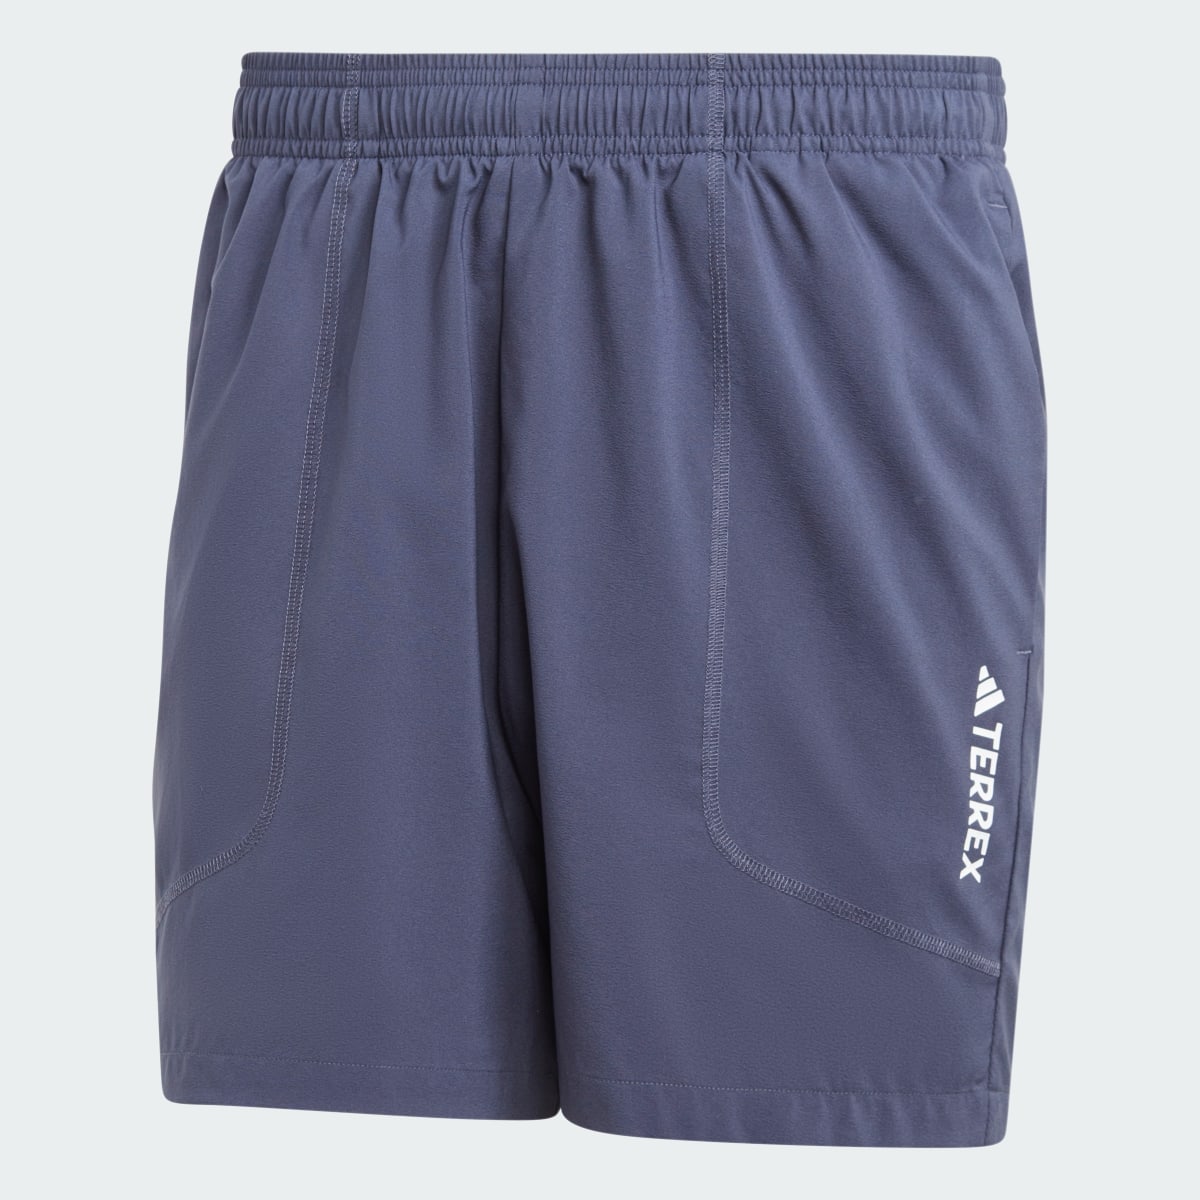 Adidas Terrex Multi Shorts. 5